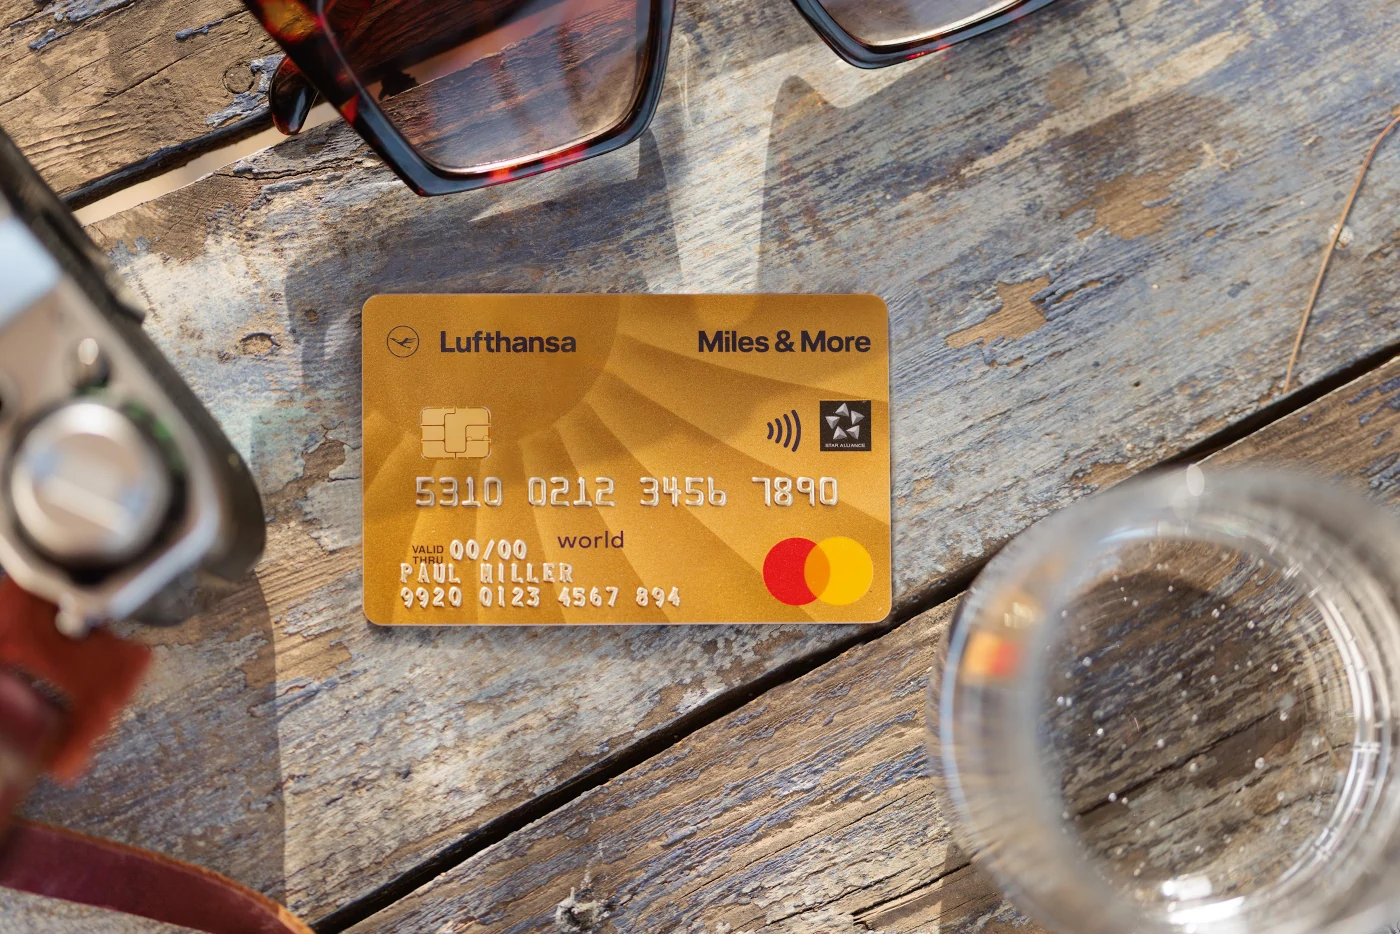 Miles & More Gold Kreditkarte Willkommensbonus